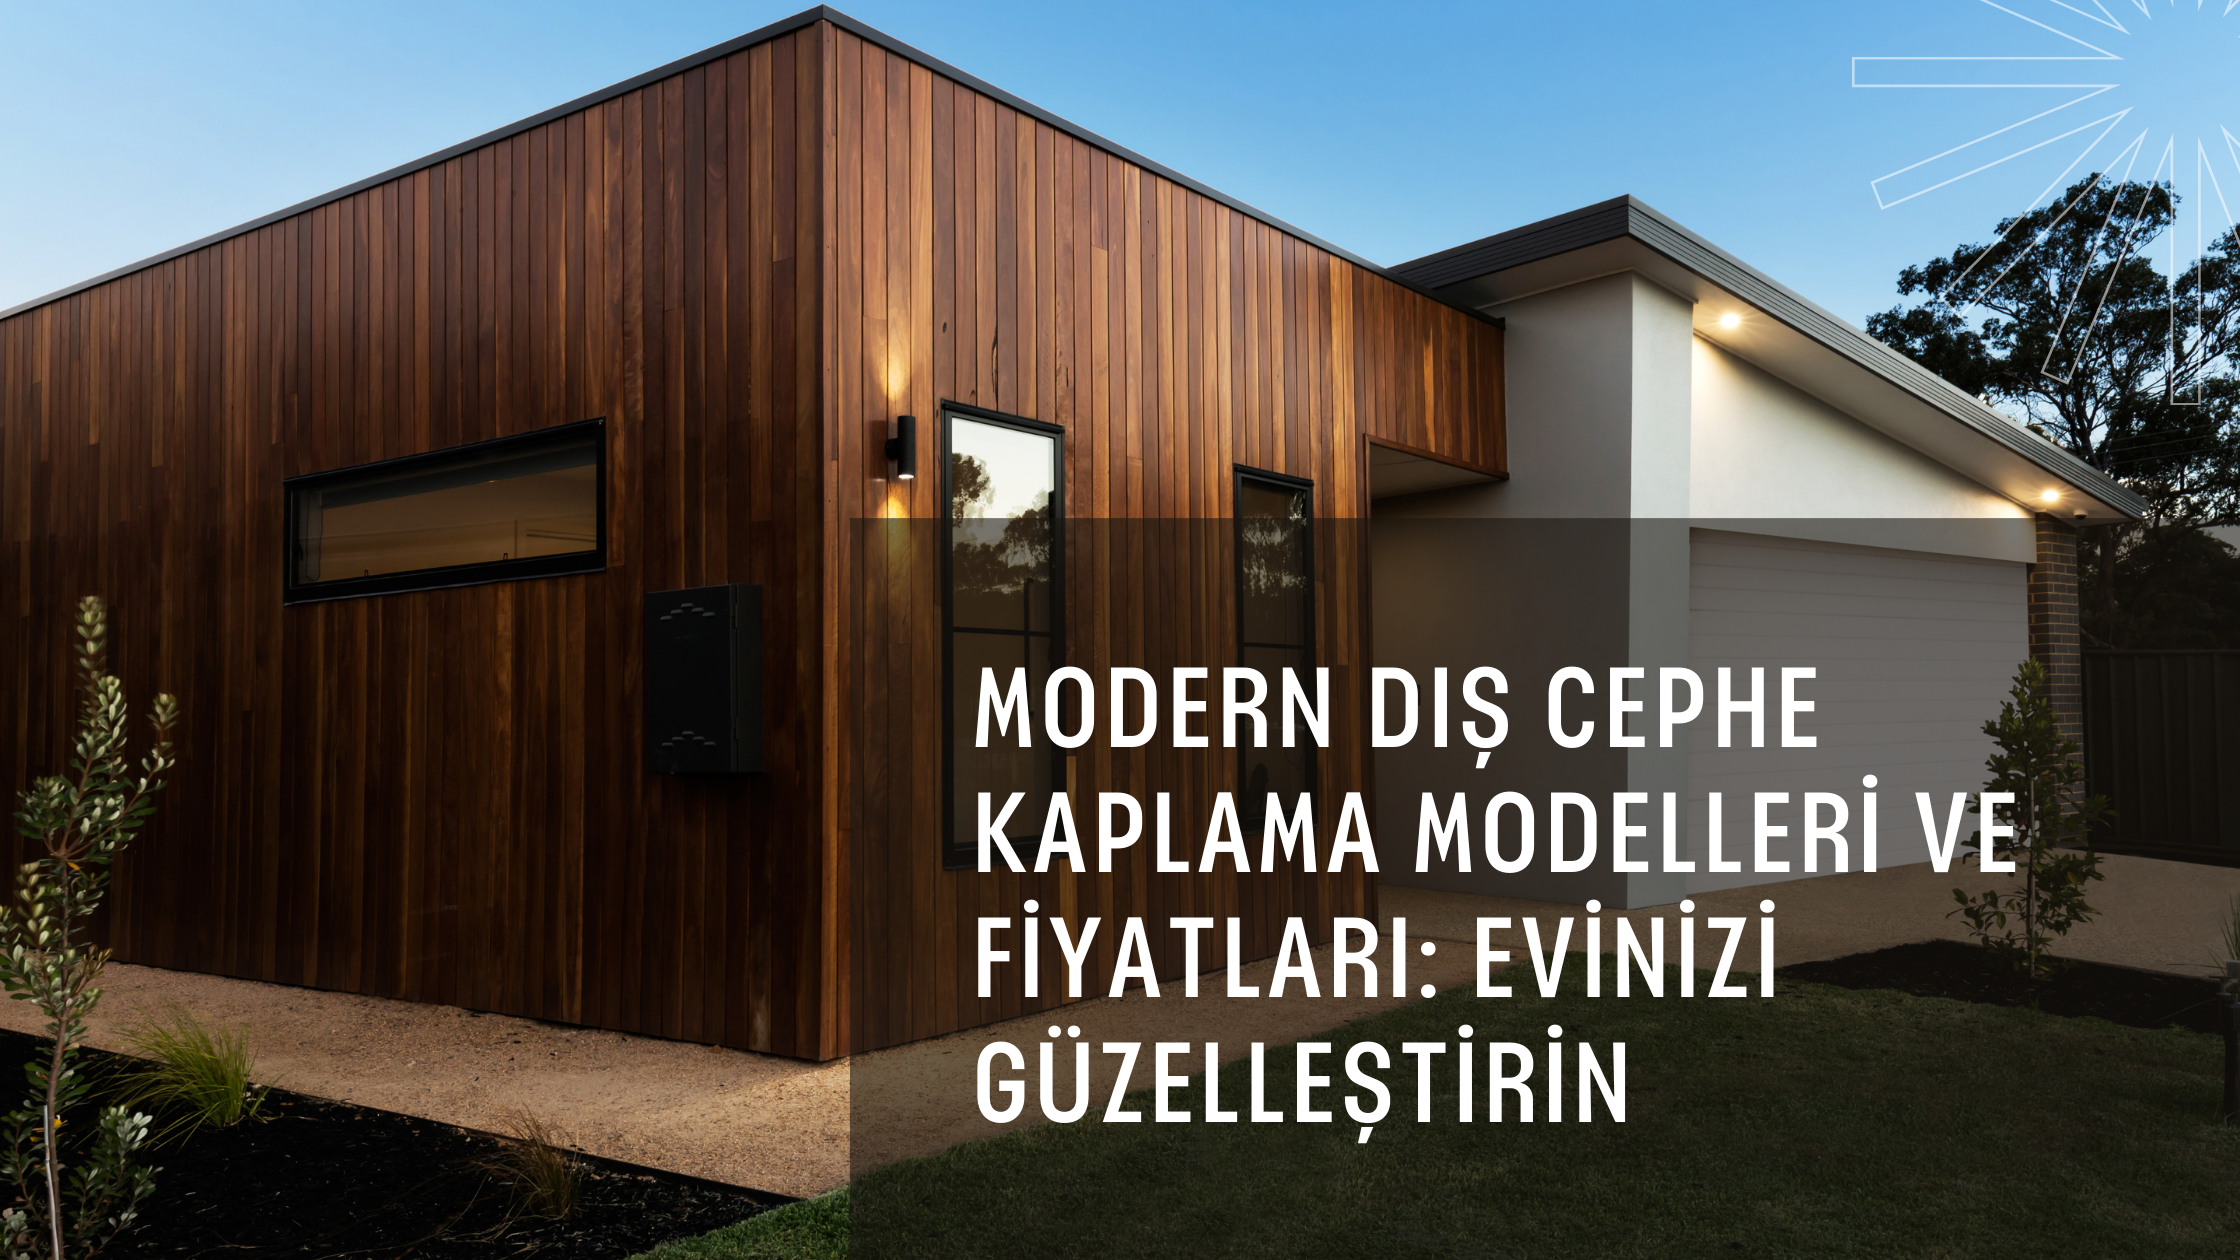 Modern Dış Cephe Kaplama Modelleri ve Fiyatları: Evinizi Güzelleştirin